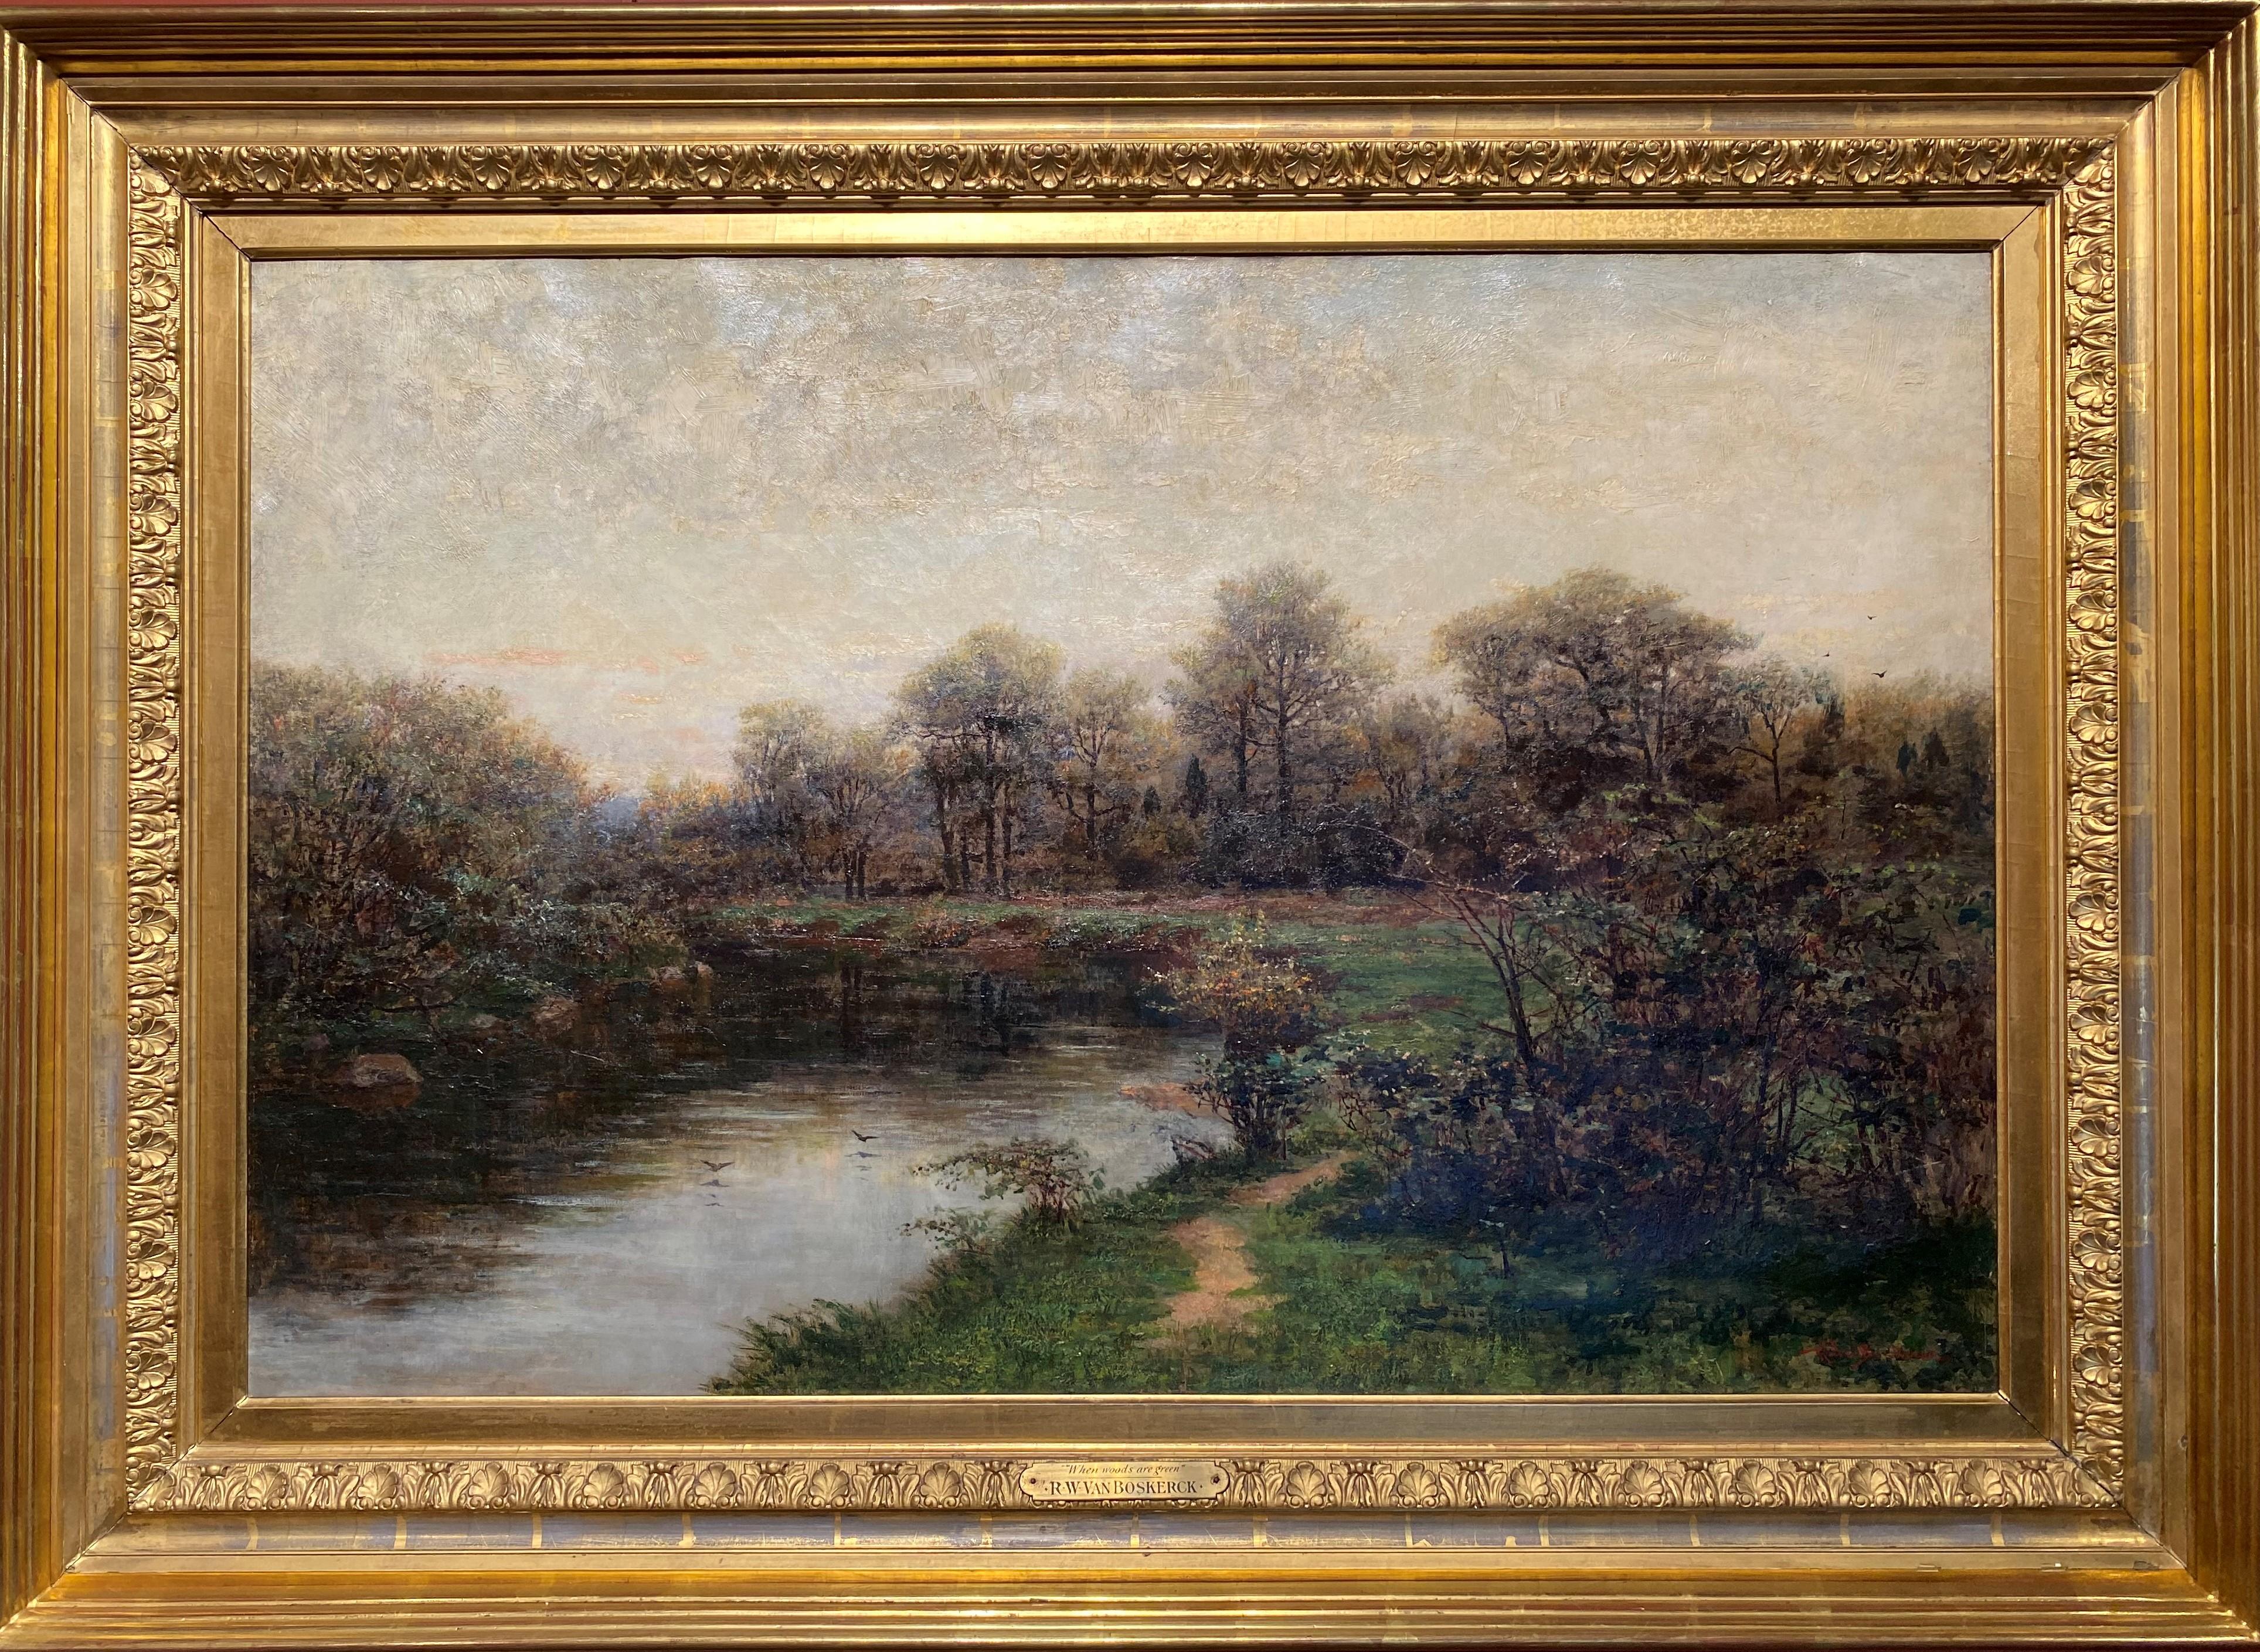 Landscape Painting Robert Ward van Boskerck - e Quand les bois sont verts